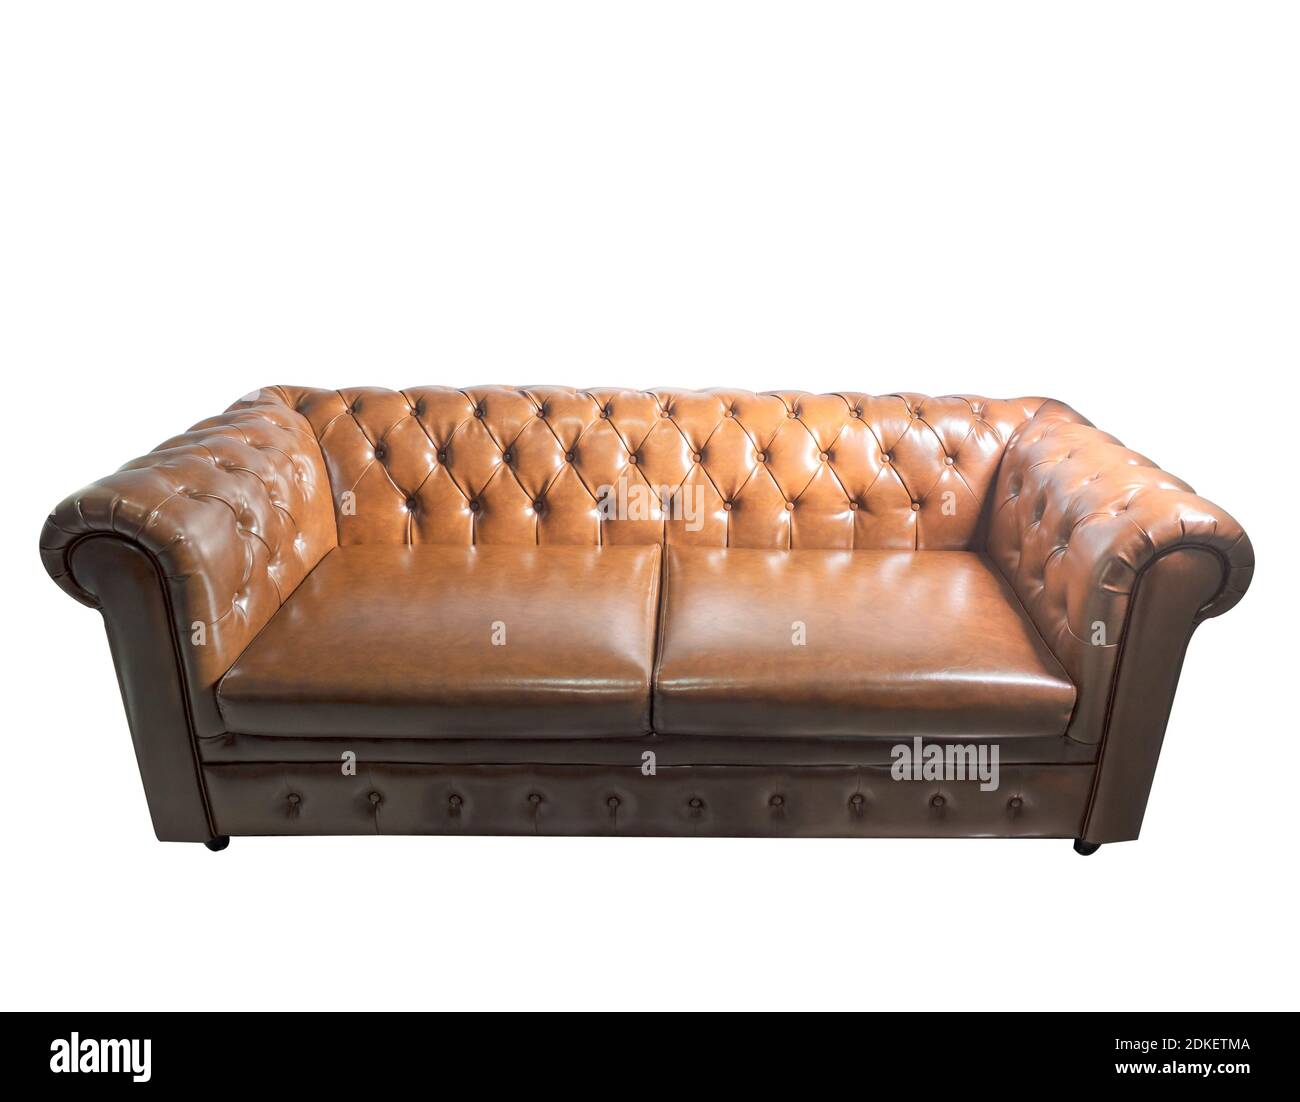 Sofás de cuero marrón vintage aislados sobre fondo blanco Fotografía de  stock - Alamy